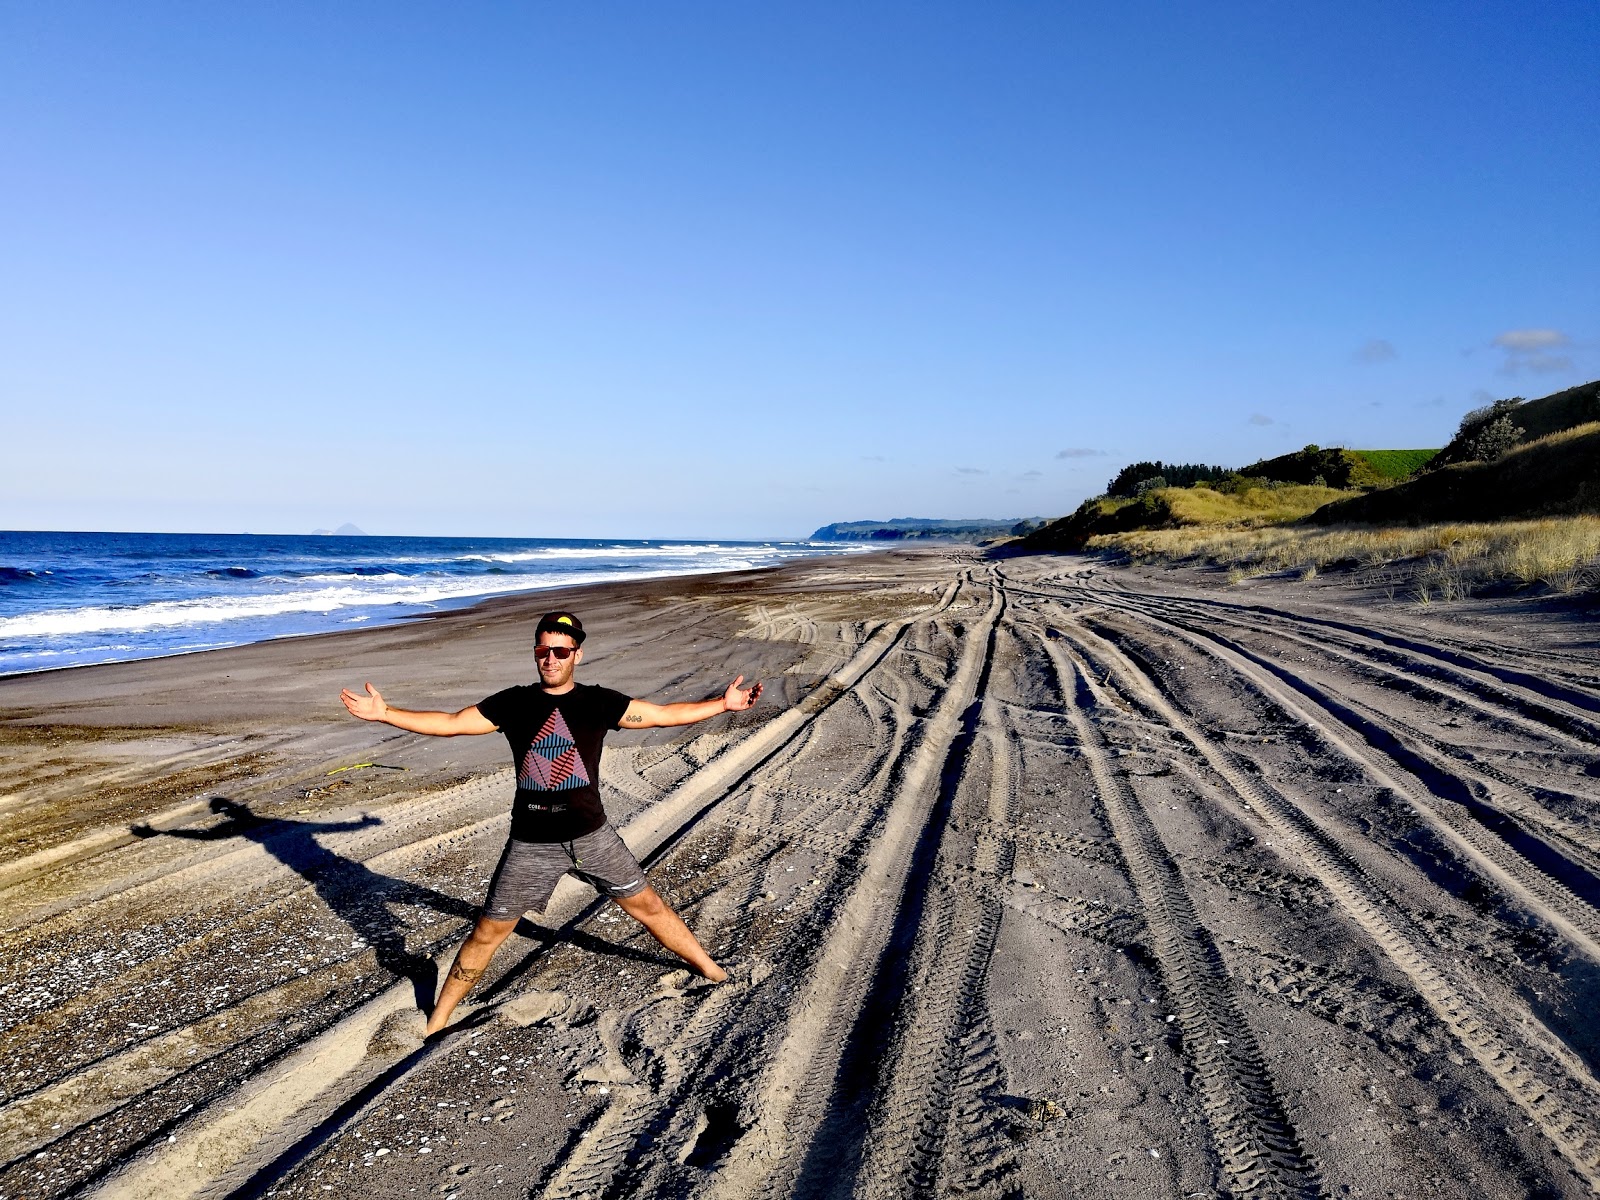 Otamarakau Beach Access'in fotoğrafı - rahatlamayı sevenler arasında popüler bir yer